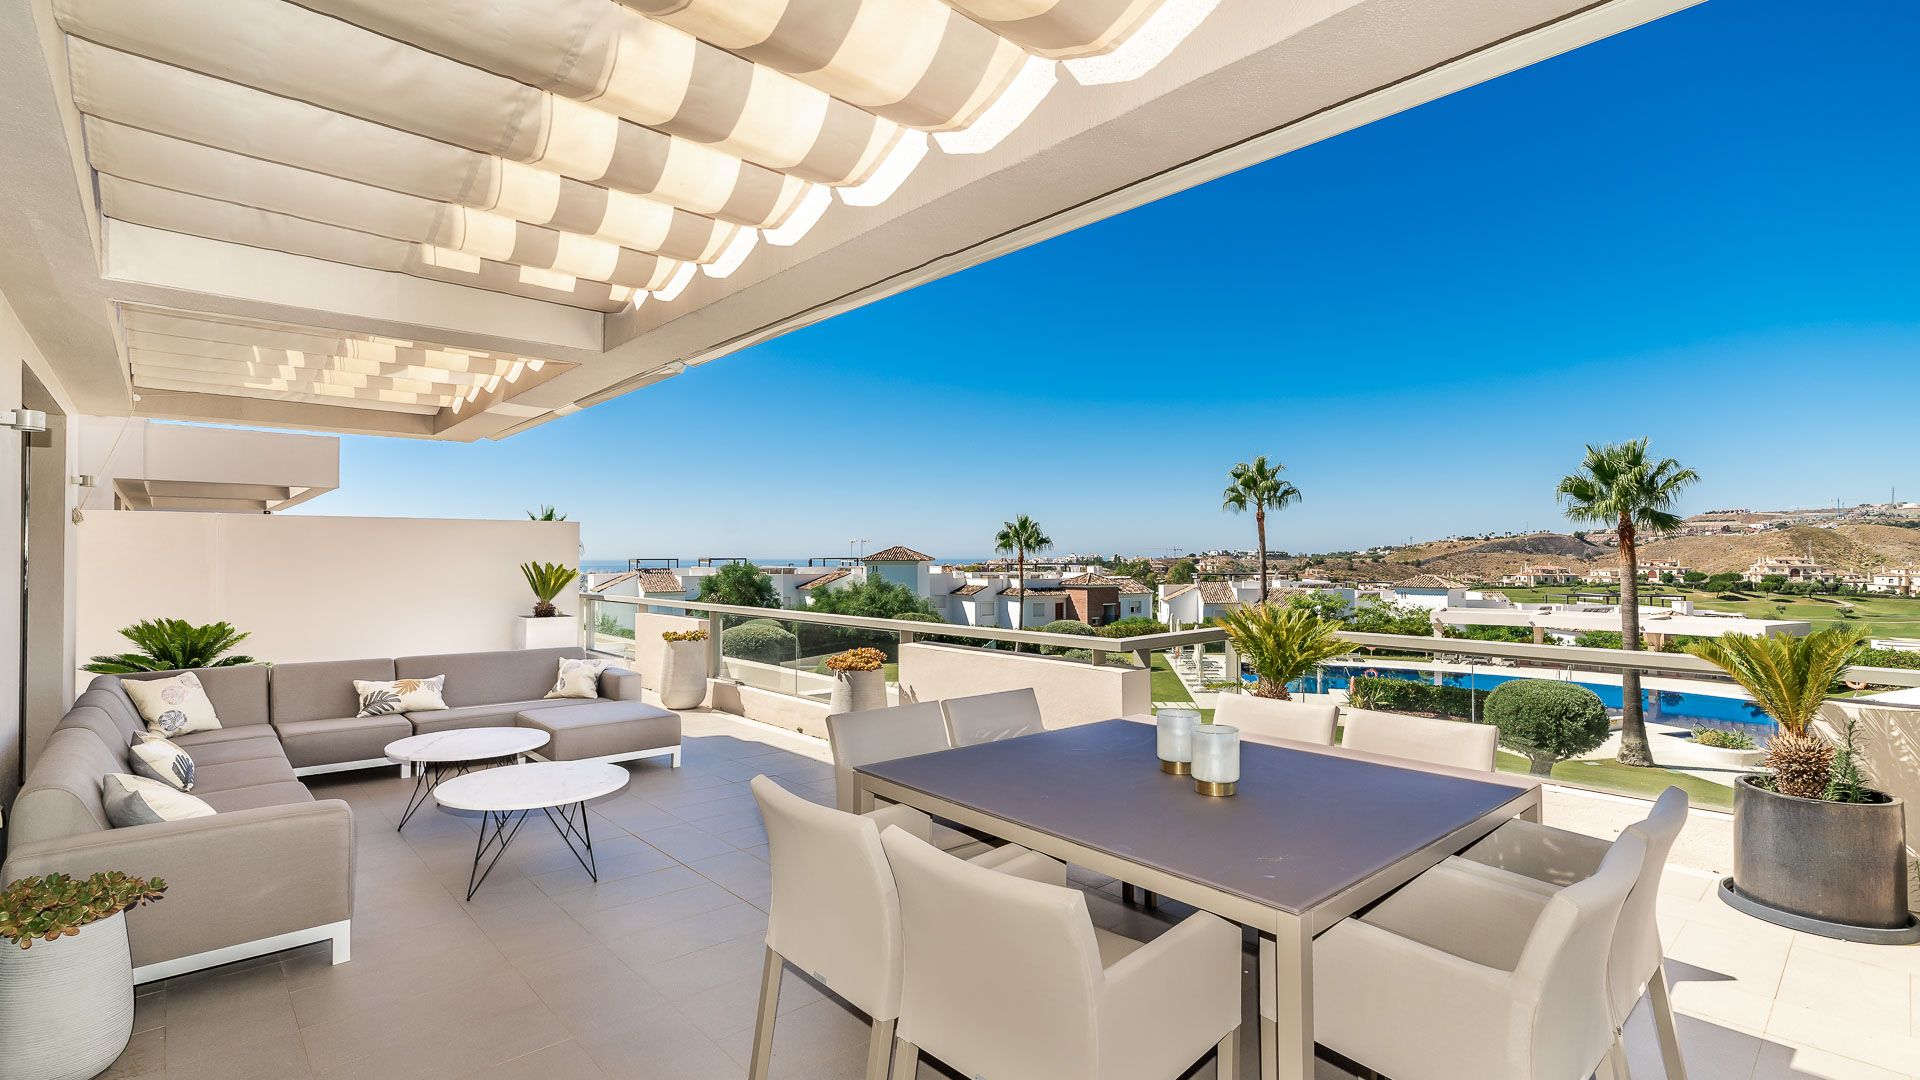 Stilvolles Luxusapartment mit herrlichem Meer-, Golf- und Bergblick, Los Arqueros | Engel & Völkers Marbella